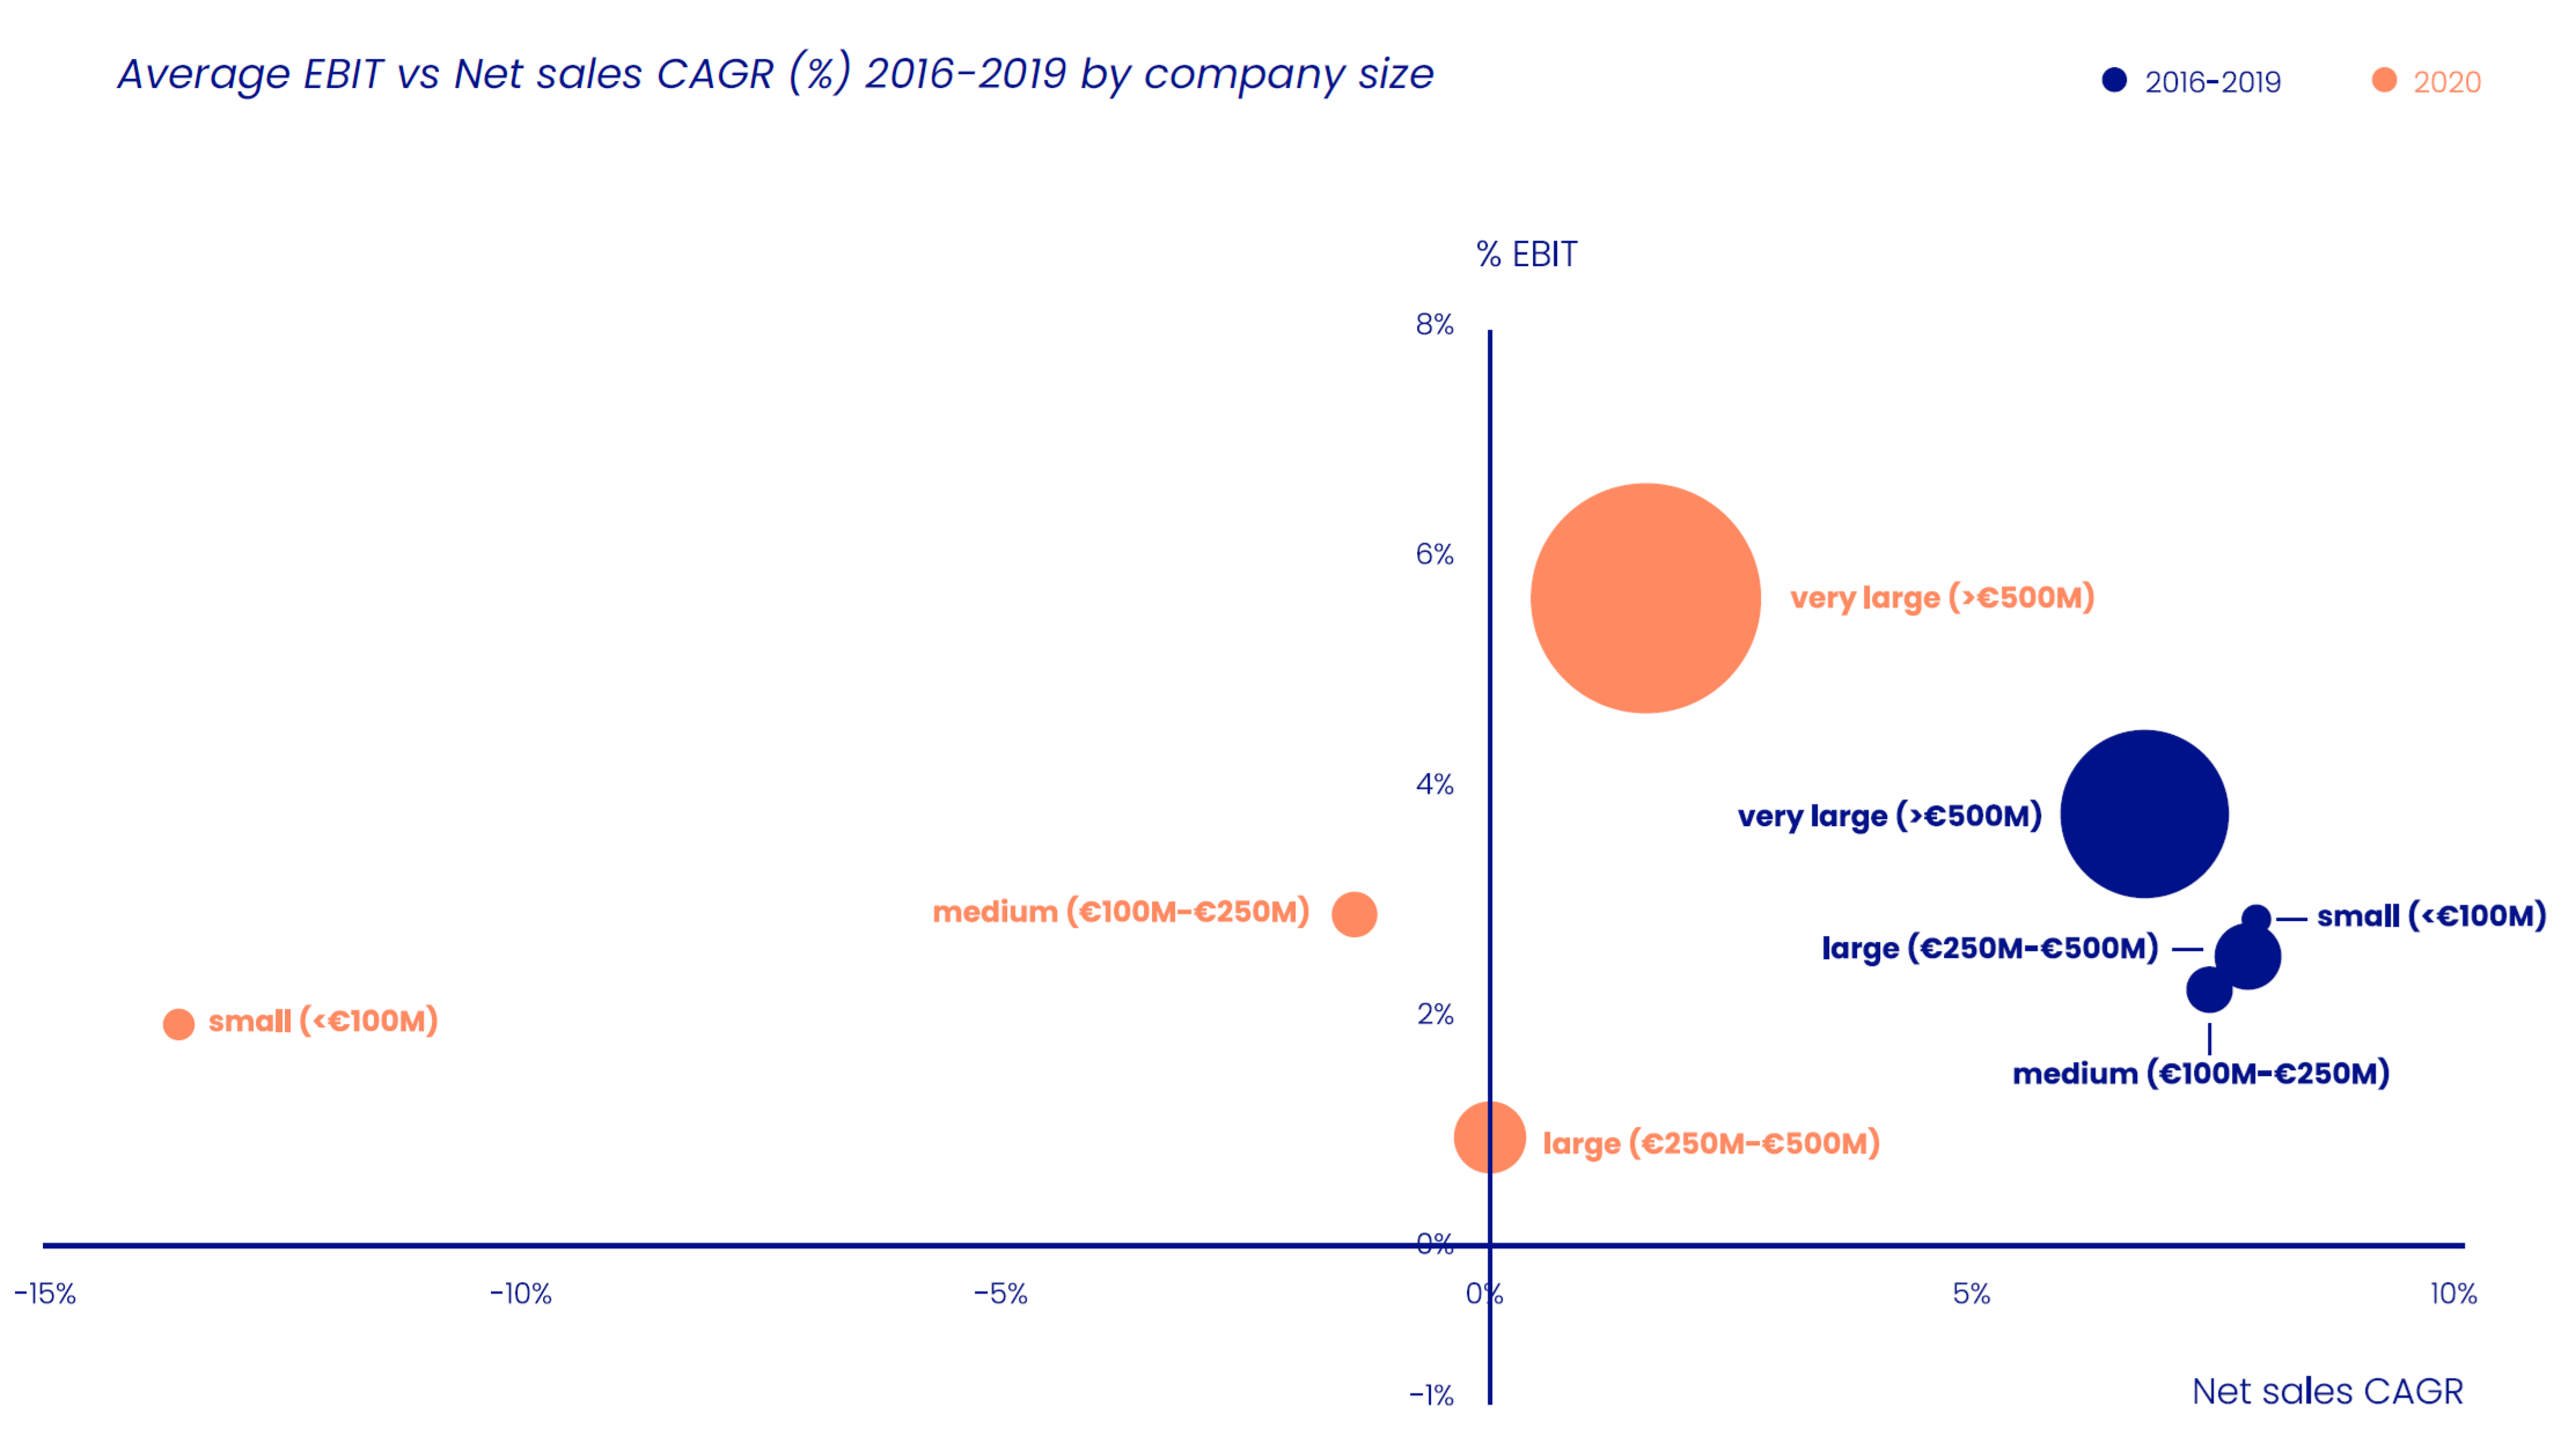 Average EBIT vs Net Sales CAGR % by company size